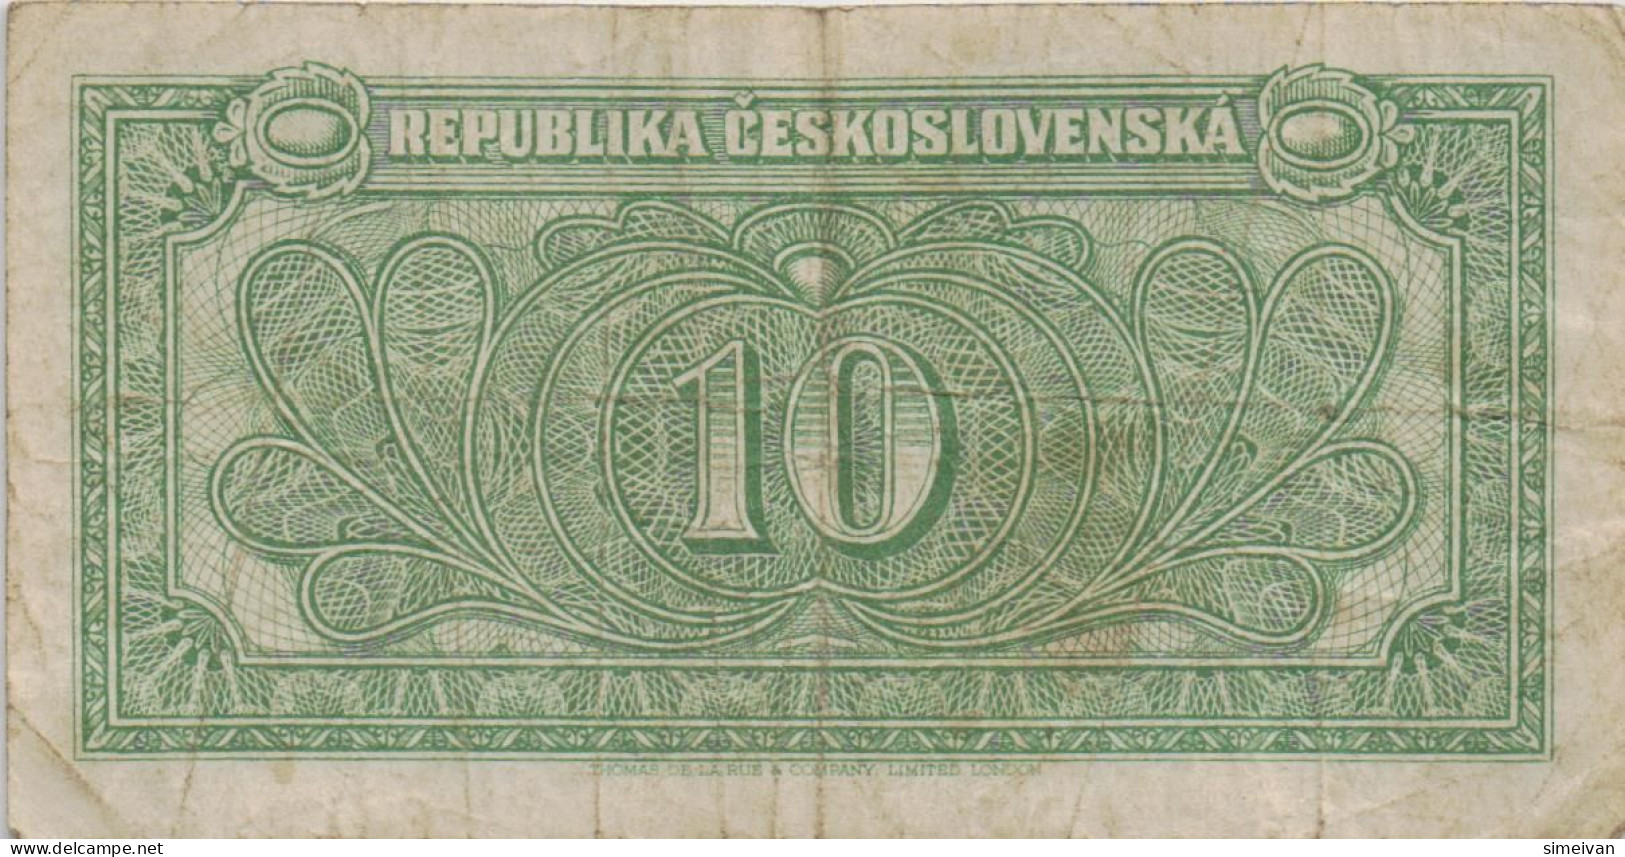 Czechoslovakia 10 Korun ND (1945) P-60a Banknote Europe Currency Tchécoslovaquie Tschechoslowakei #5226 - Cecoslovacchia